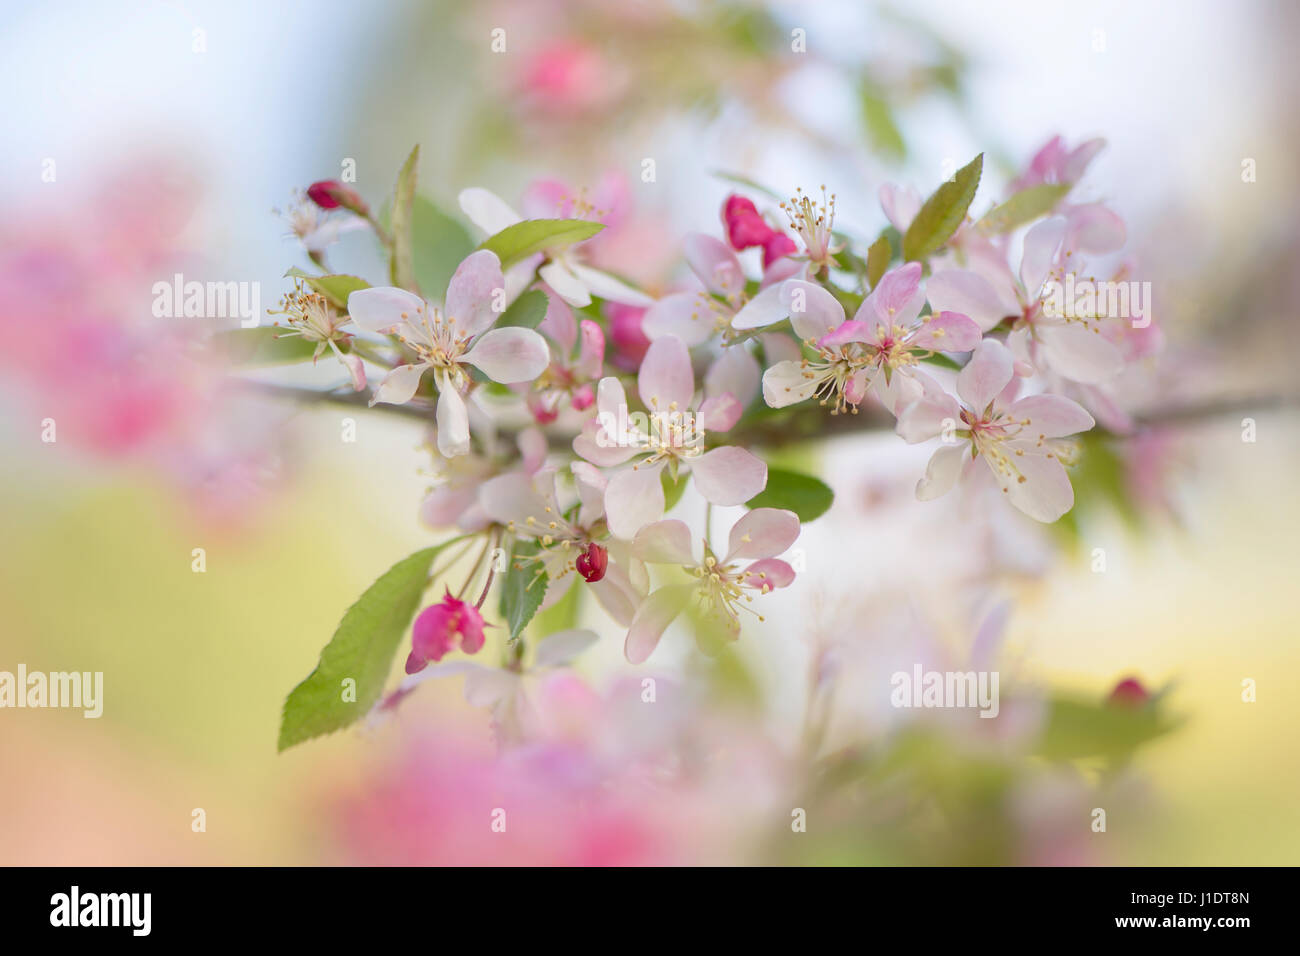 Close-up immagine della bella primavera sbocciano i fiori fiori rosa e bianchi del giapponese Crab Apple tree - Malus floribunda Foto Stock